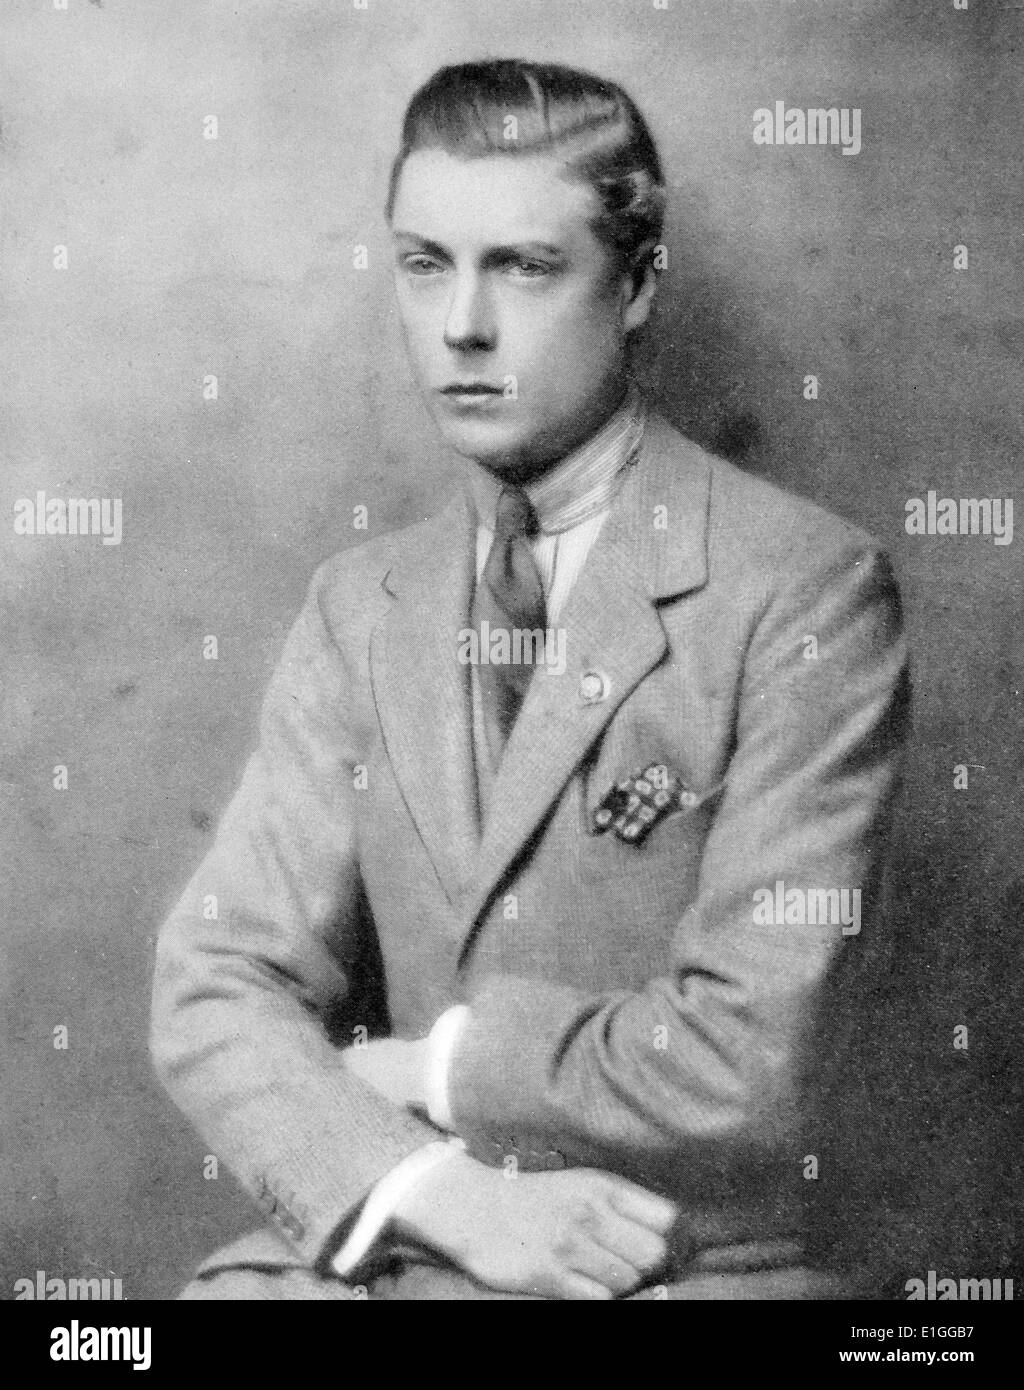 Fotocamera il ritratto di Sua Altezza Reale il Principe Edoardo VII del Galles (1894 - 1972). Fotografia scattata da Hugh Cecil, noto anche come Hugh Cecil Saunders (1890 - 1974). Datata 1927 Foto Stock